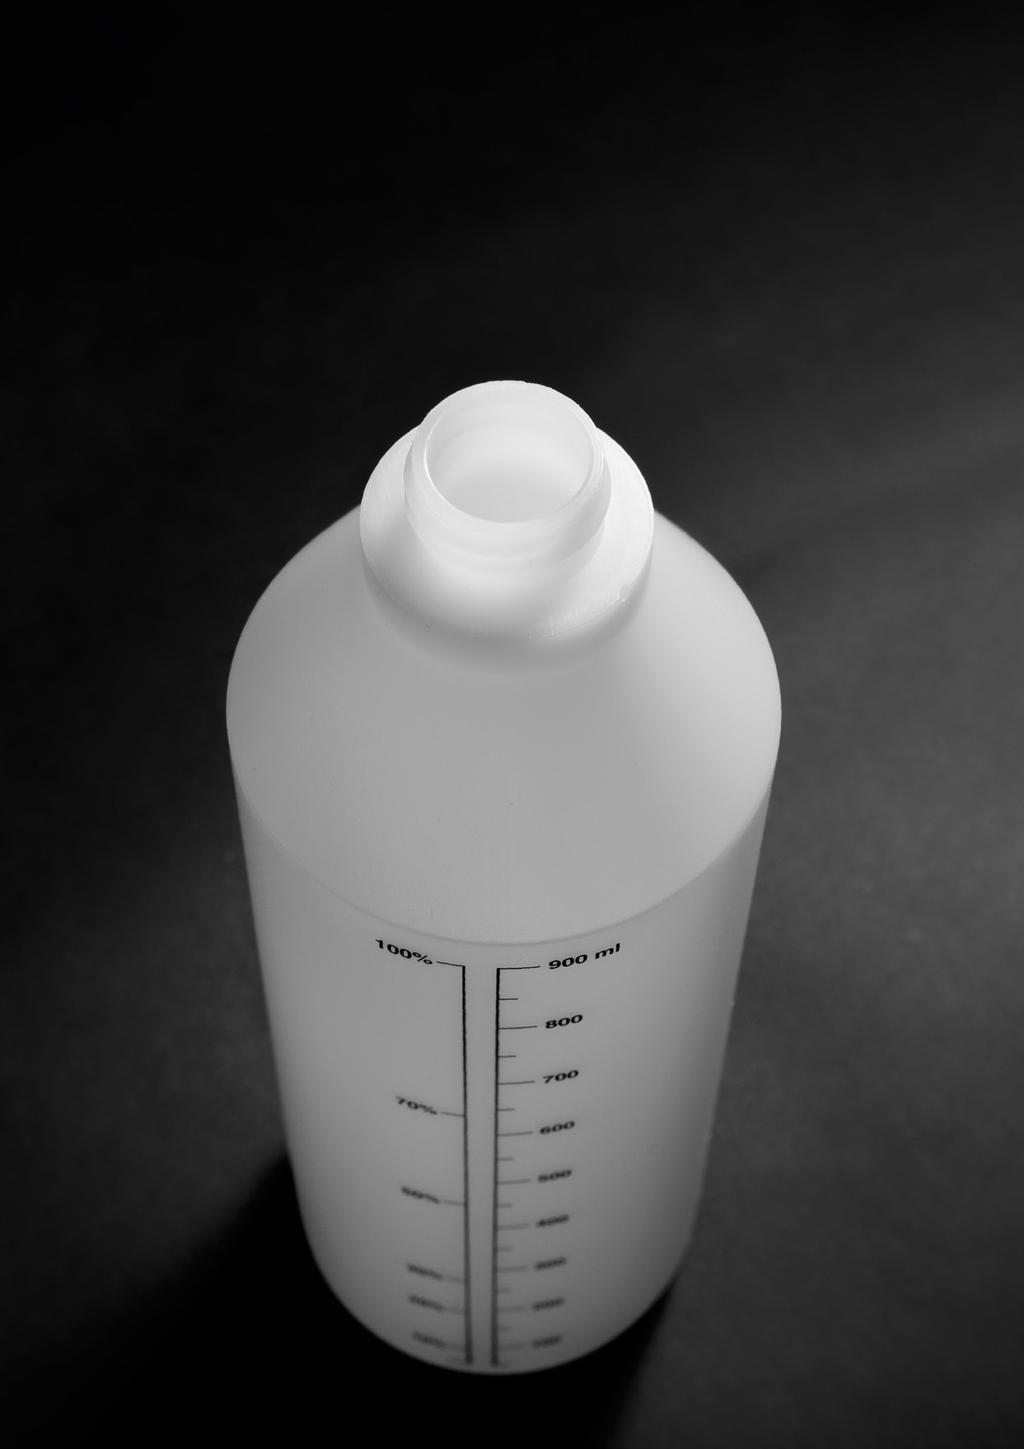 FLACONI FLACONI La gamma di flaconi comprende articoli di diverse forme e capacità da un minimo di 140 ml ad un masmo di 1045 ml.